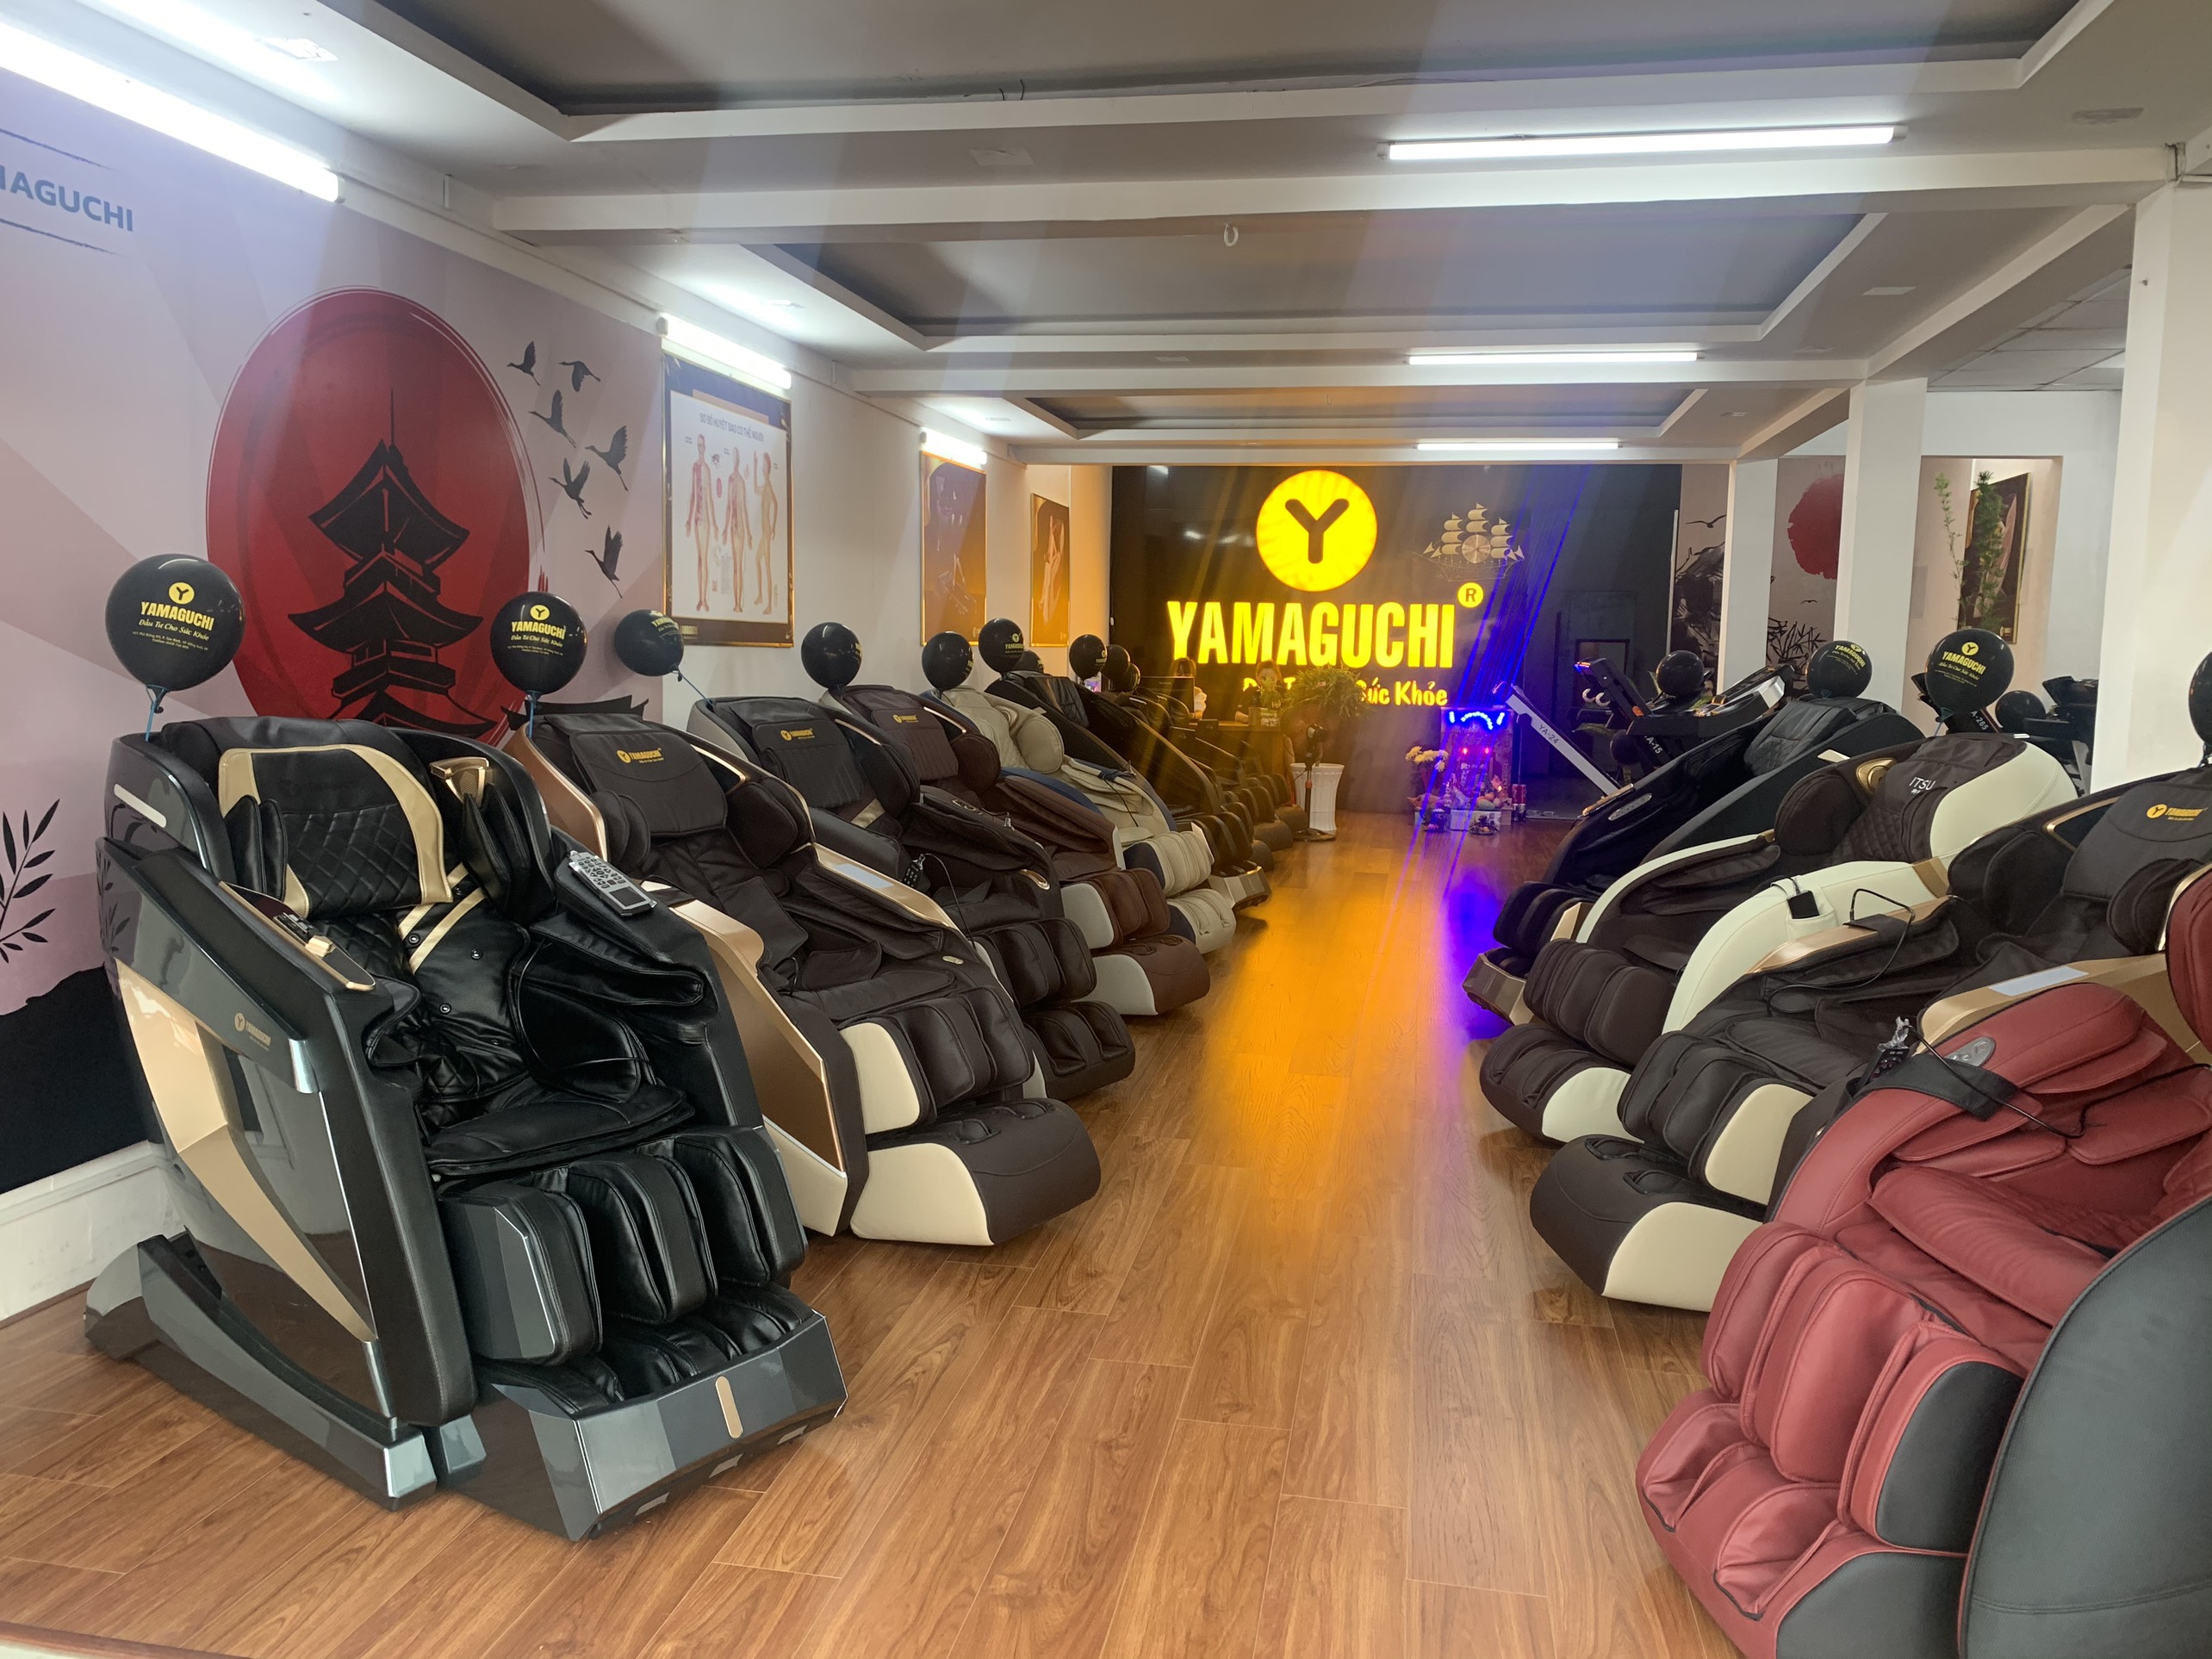 Mua ghế massage Yamaguchi Bình Phước - địa điểm bán ghế massage uy tín nhất